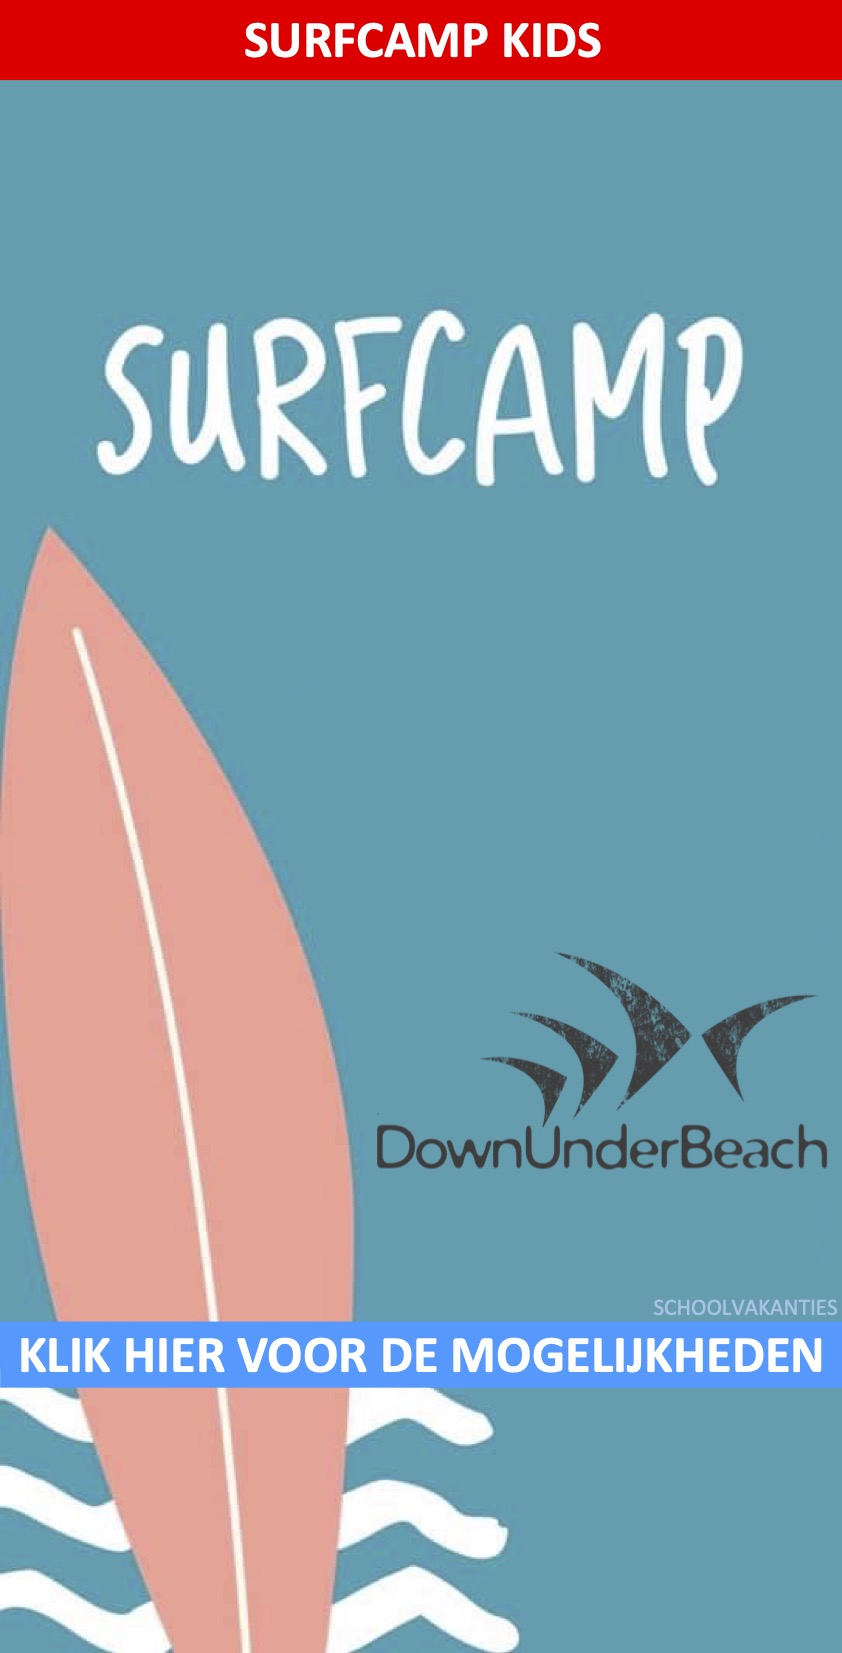 SurfCamp Down Under Beach